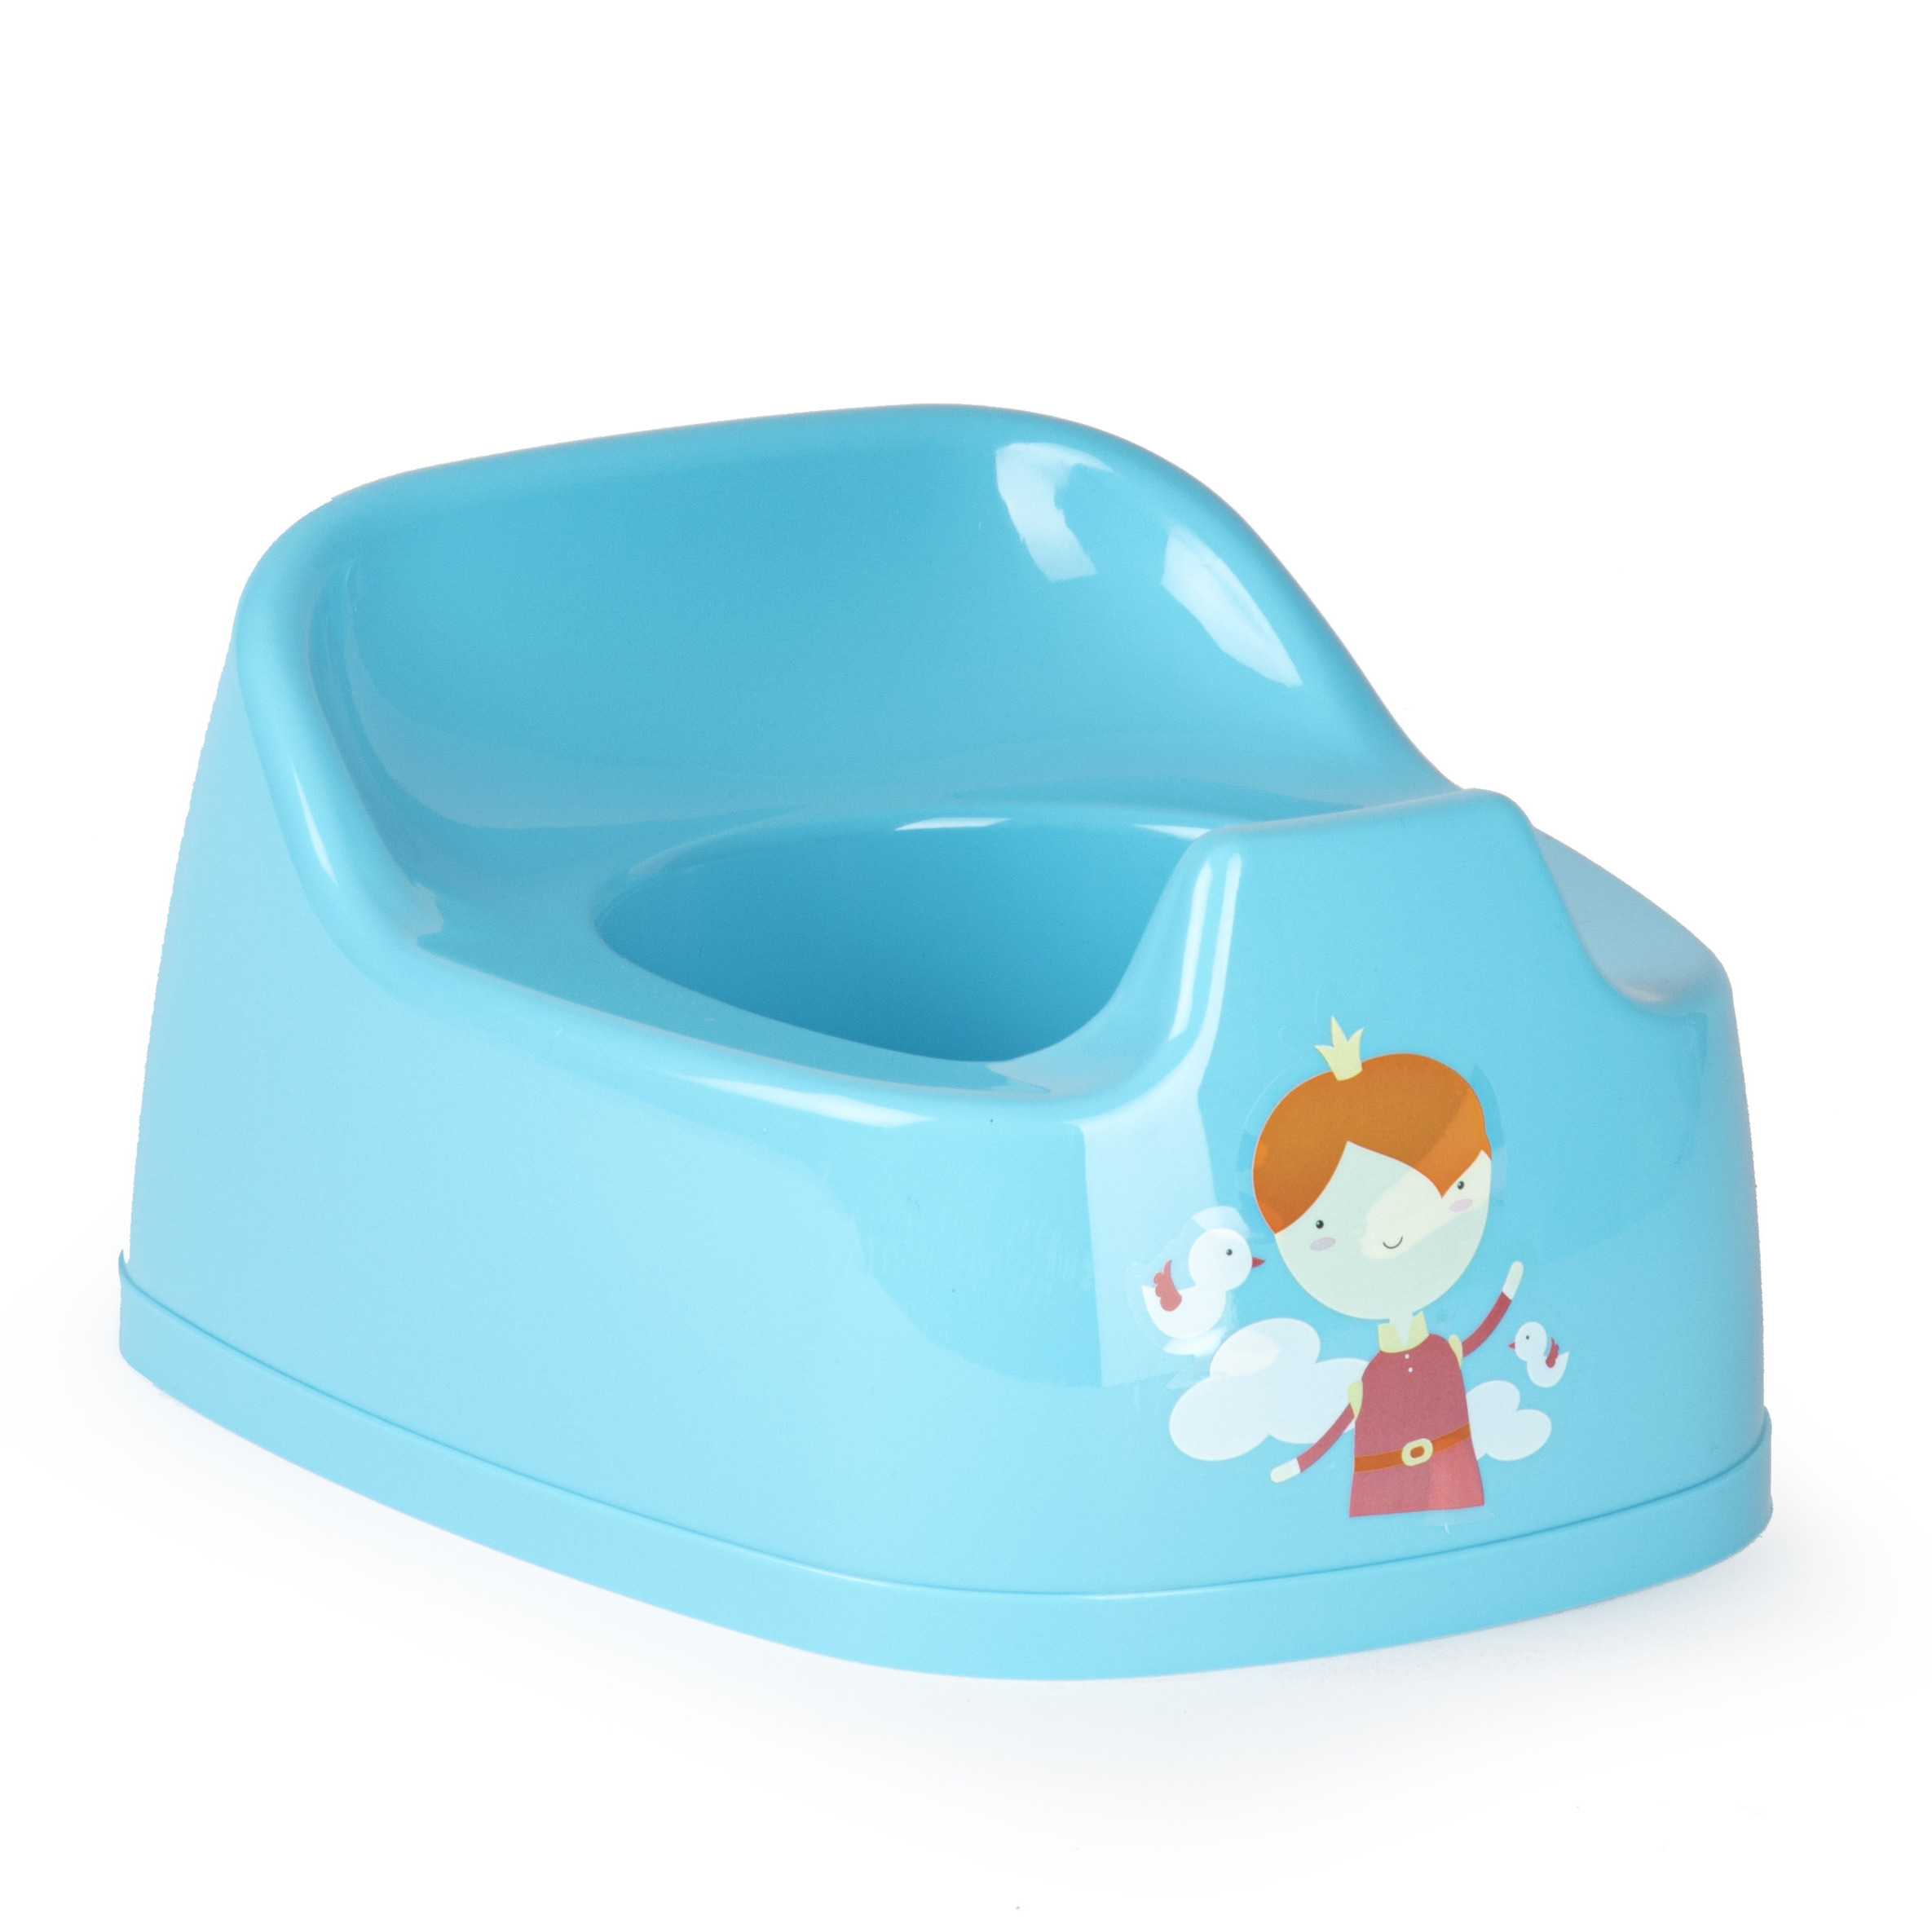 Baby-peuter plaspotje-wc potje blauw met willekeurige afbeelding op sticker 27 cm